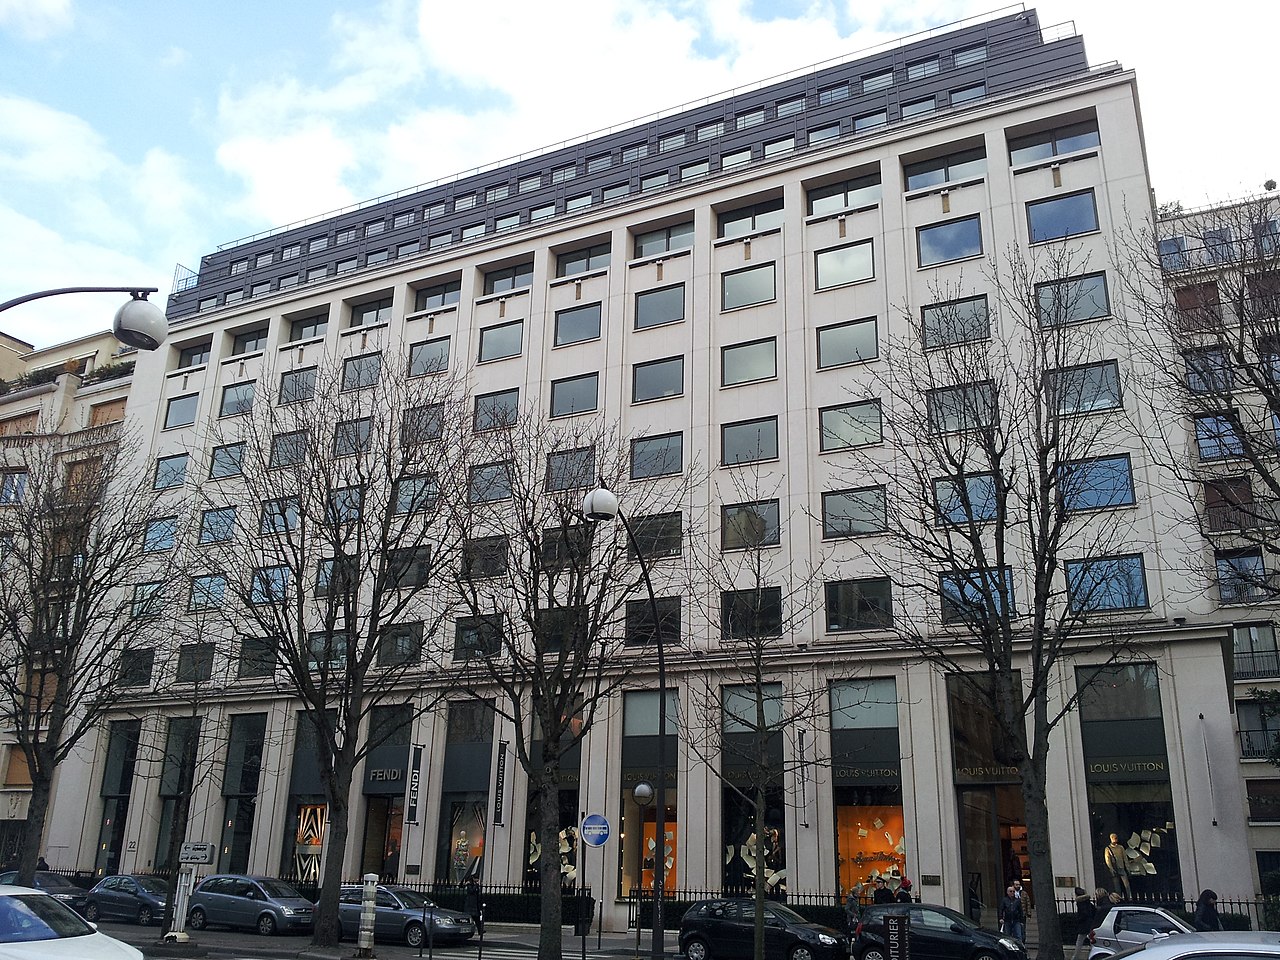 LVMH's headquarters in Avenue Montaigne, Paris